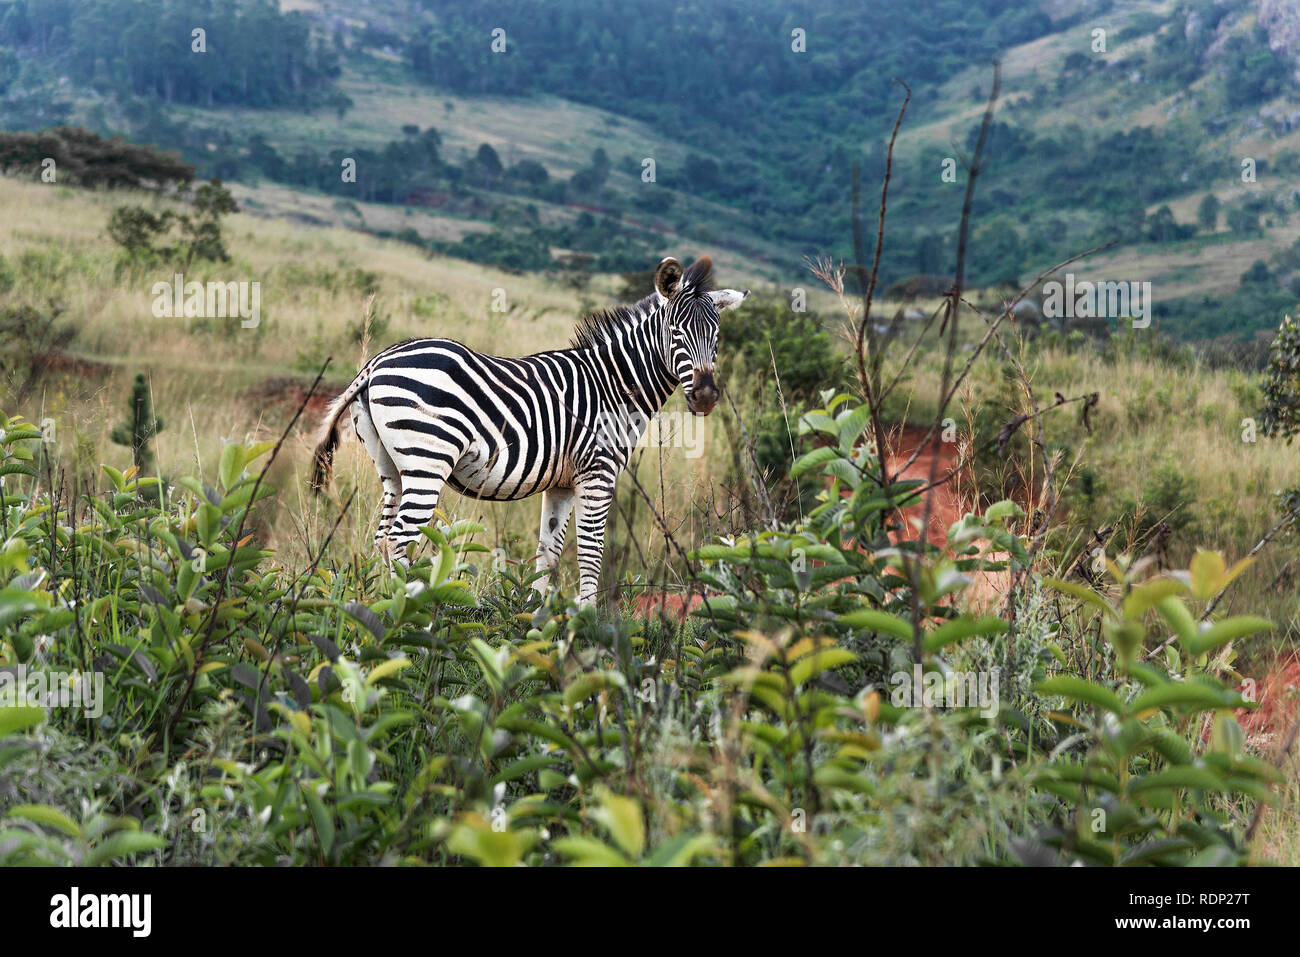 Ebenen Zebras (Equus quagga) oder Burchell's Zebra stehend in der hügeligen Landschaft der Hluhluwe Imfolozi Park, ein Game Reserve, KwaZulu-Natal, Südafrika Stockfoto